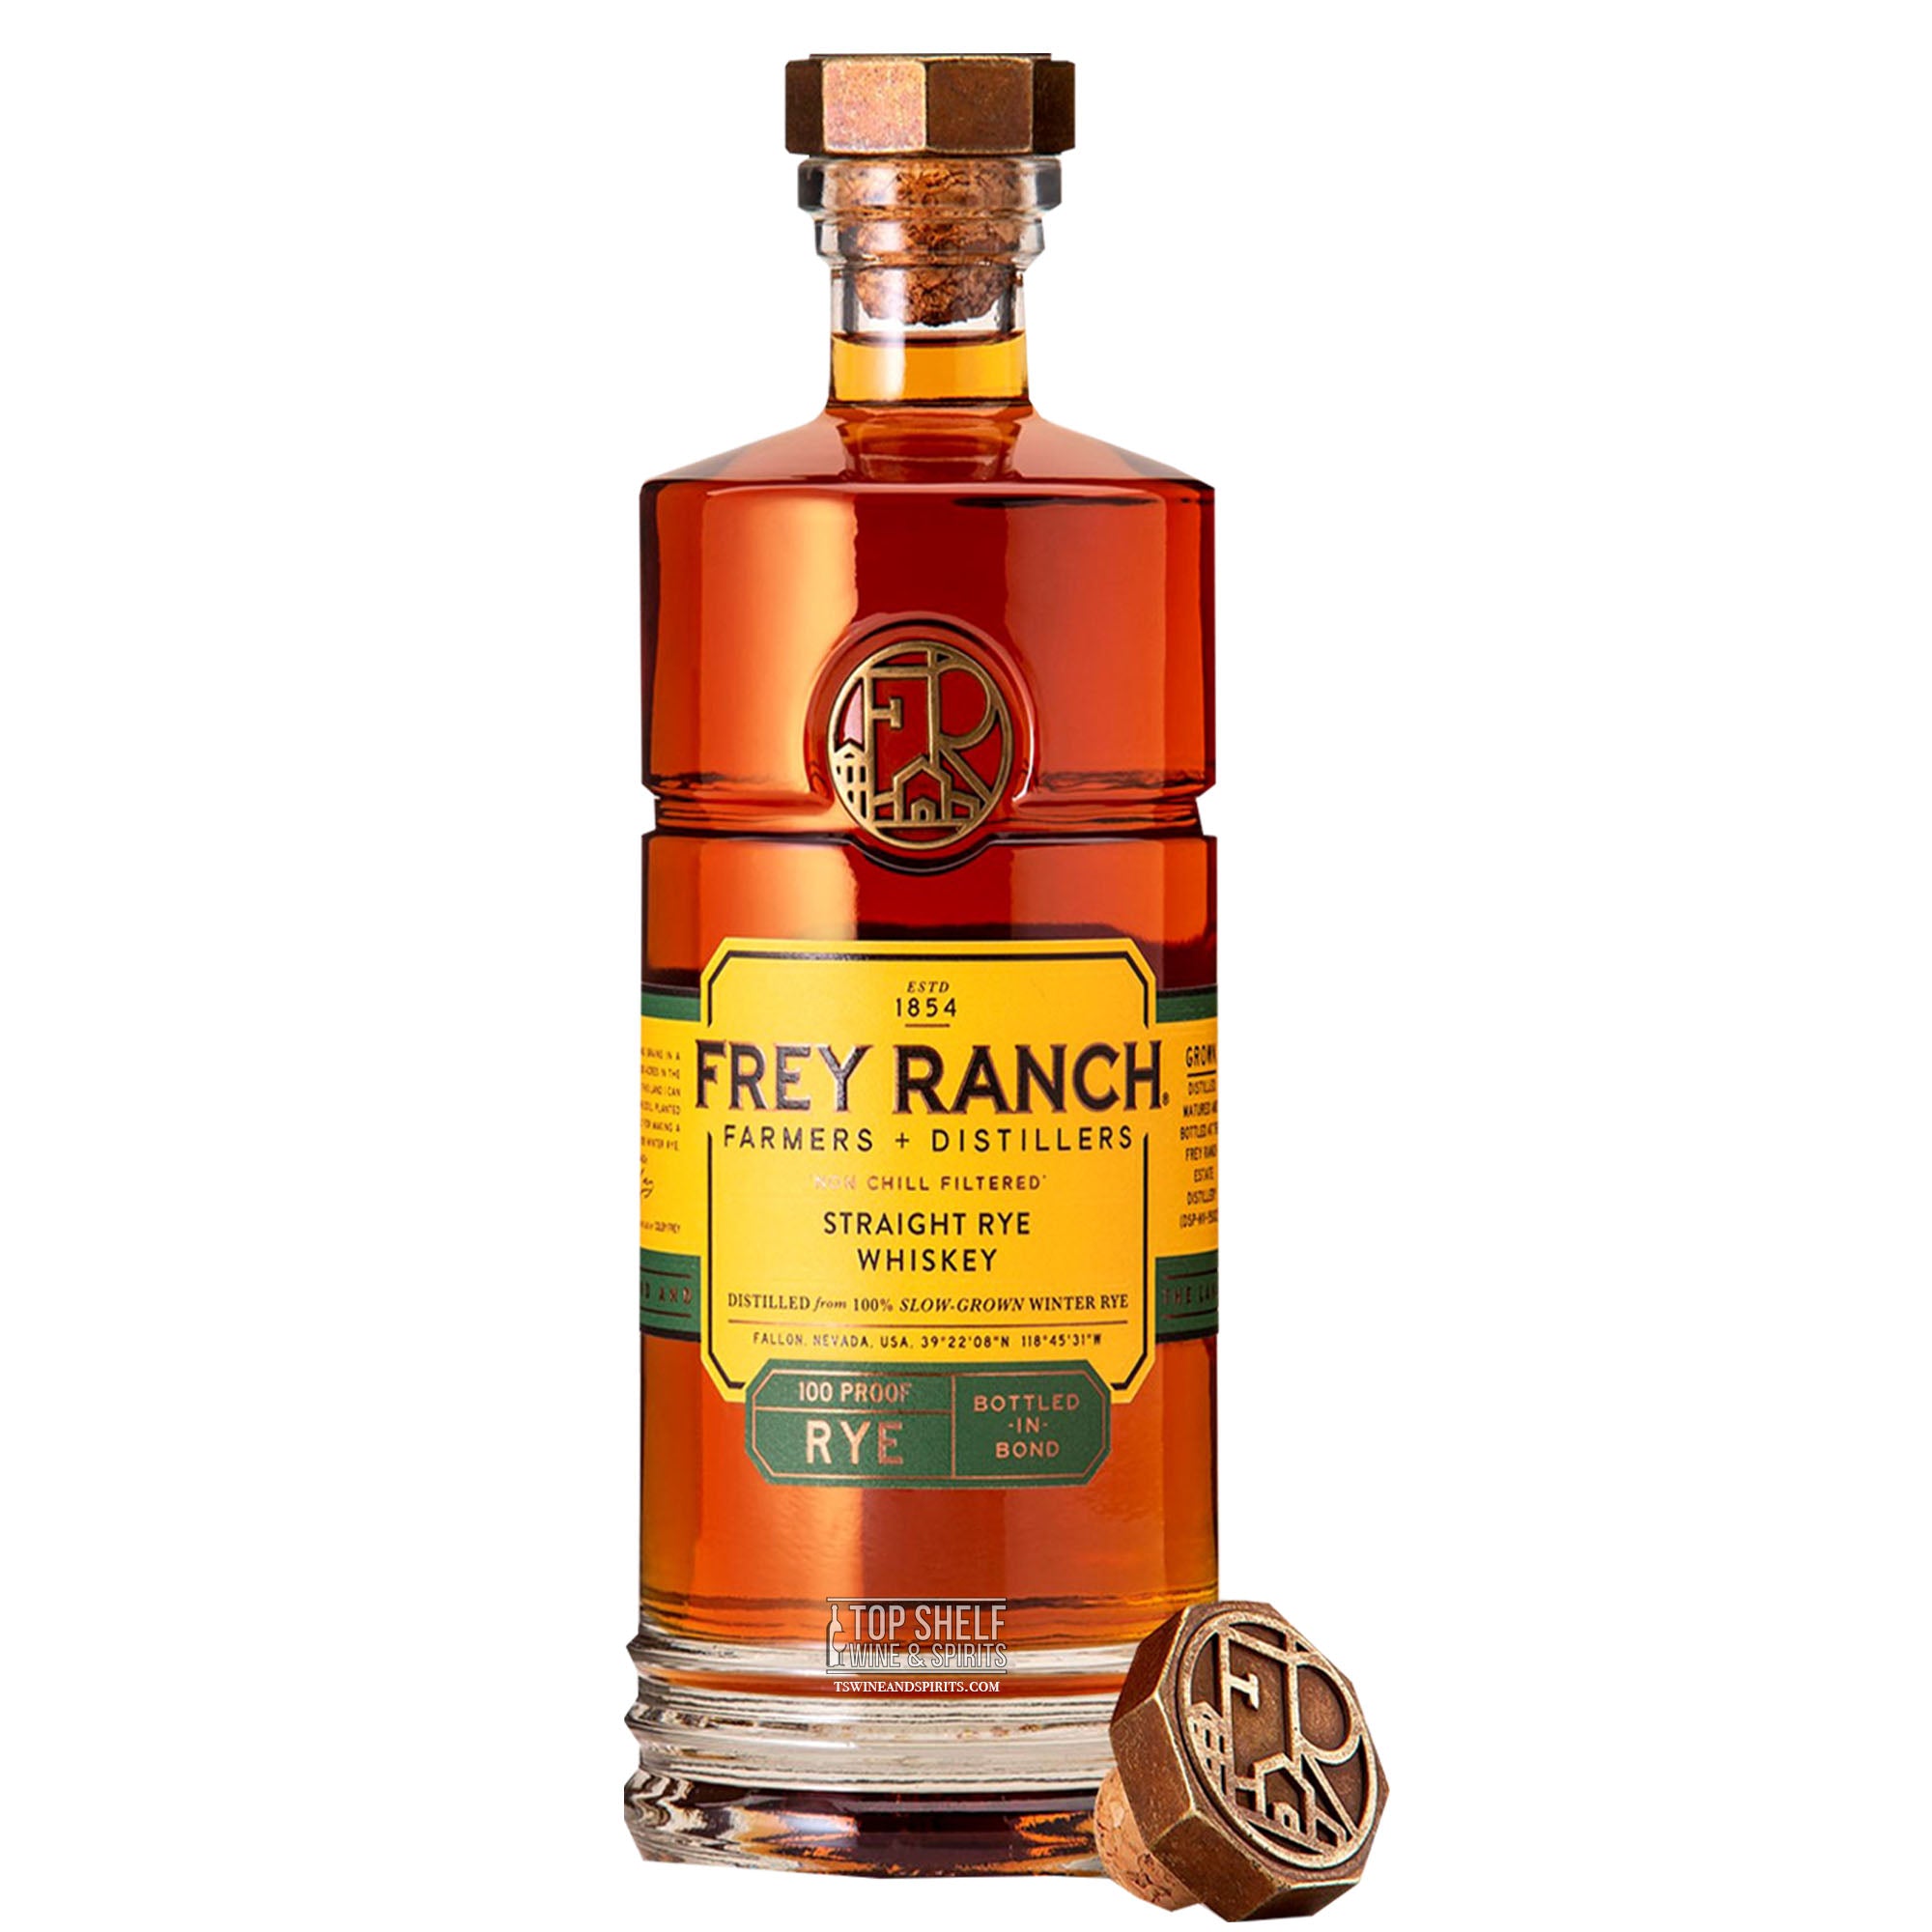 Frey Ranch Bottled in Bond Straight Rye Whiskey